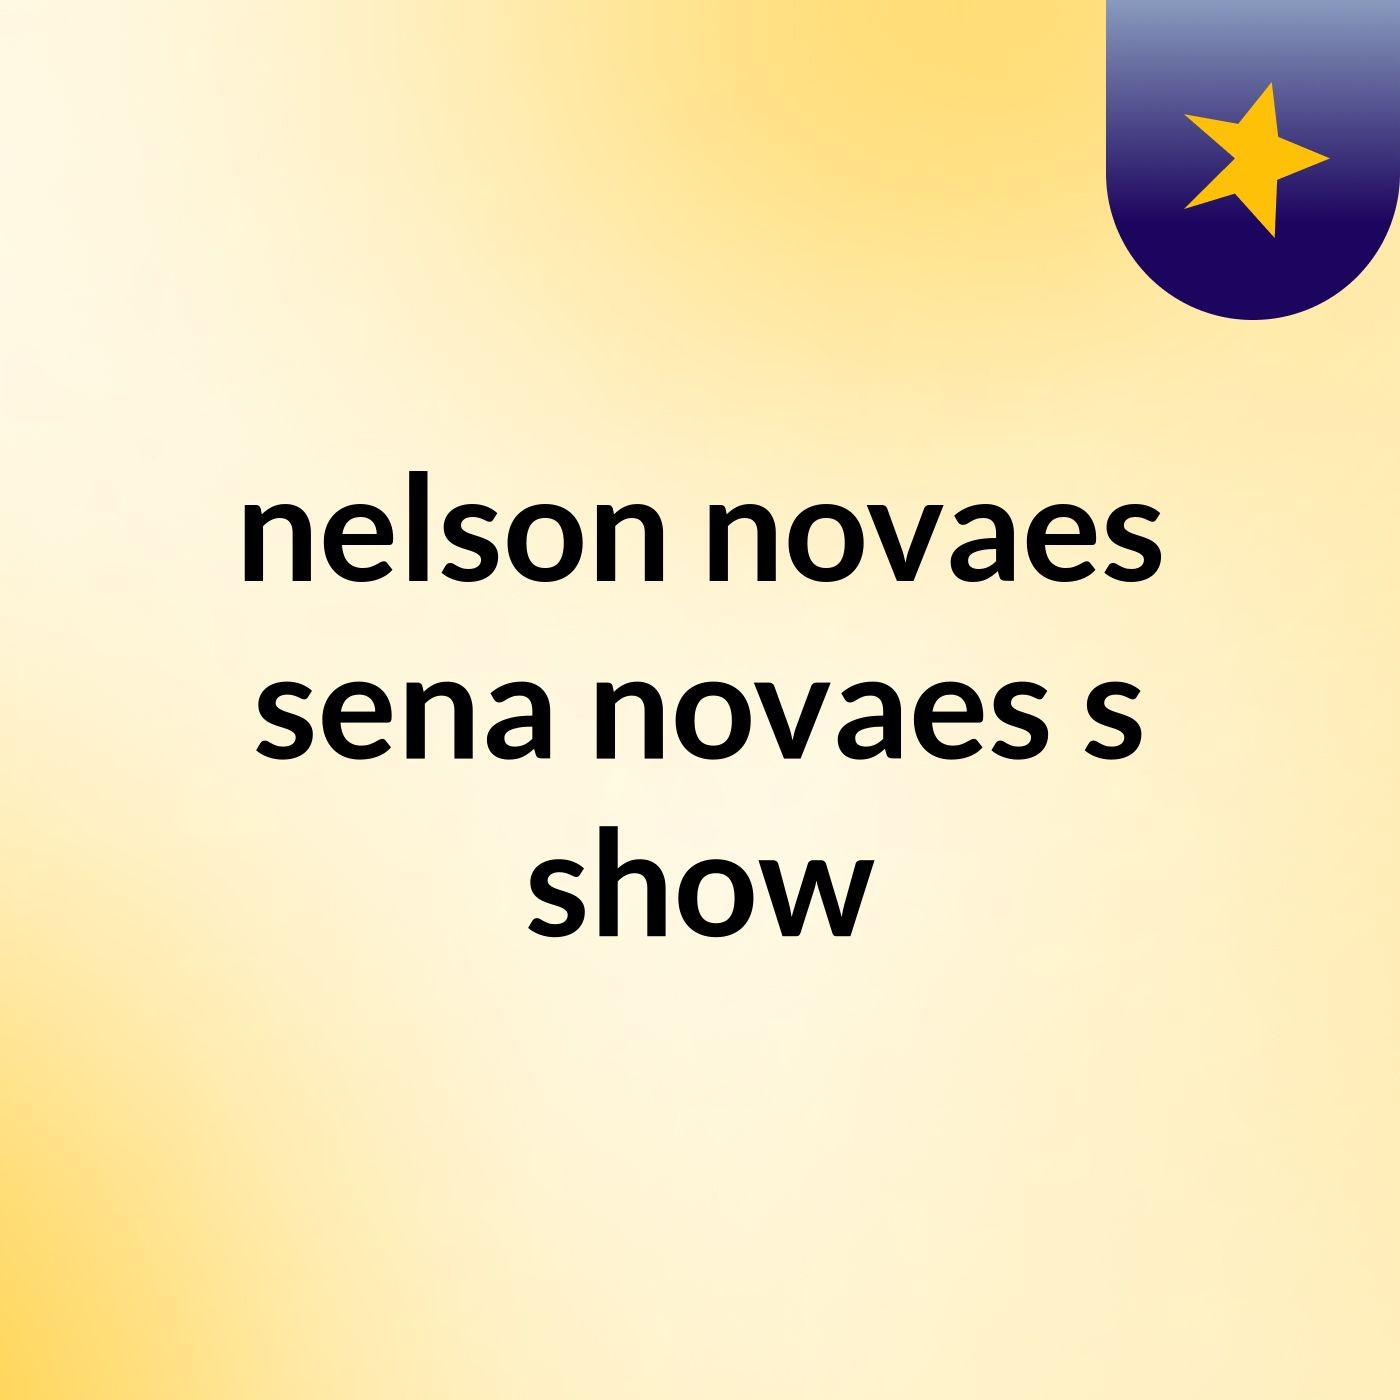 nelson novaes sena novaes's show